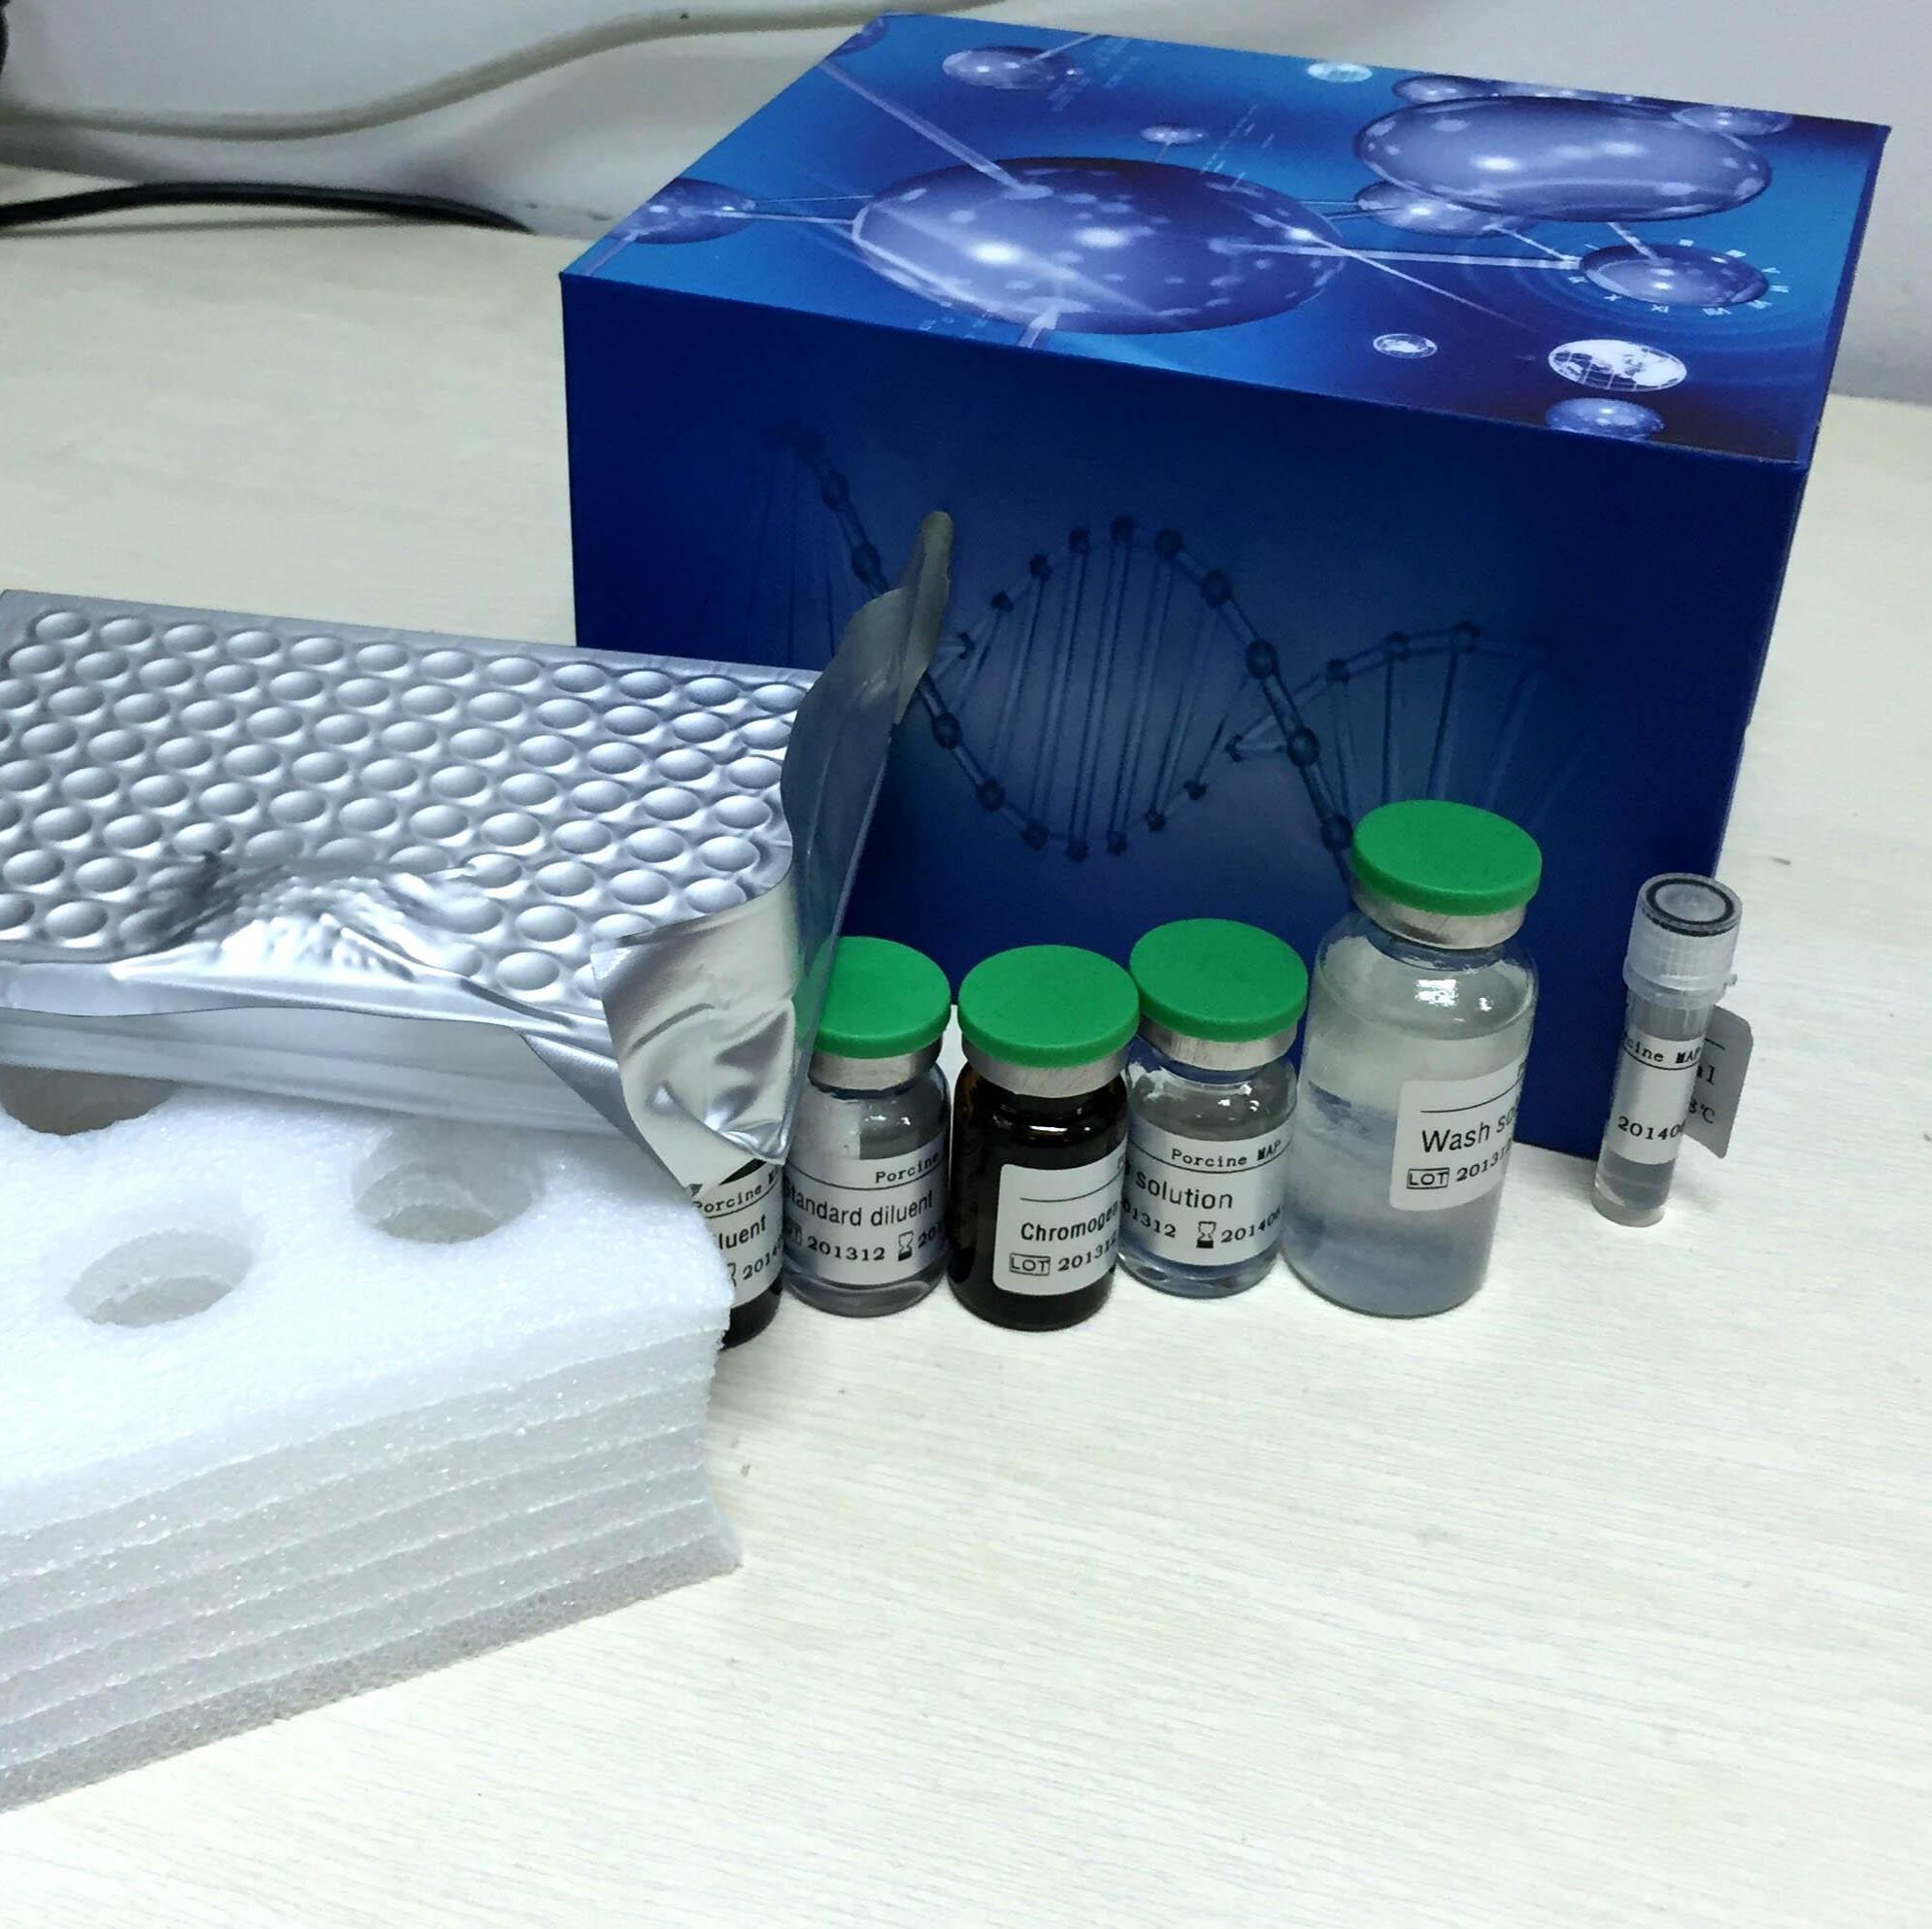 人免疫球蛋白G Fc段受体Ⅱ(FcγRⅡ/CD32)ELISA试剂盒